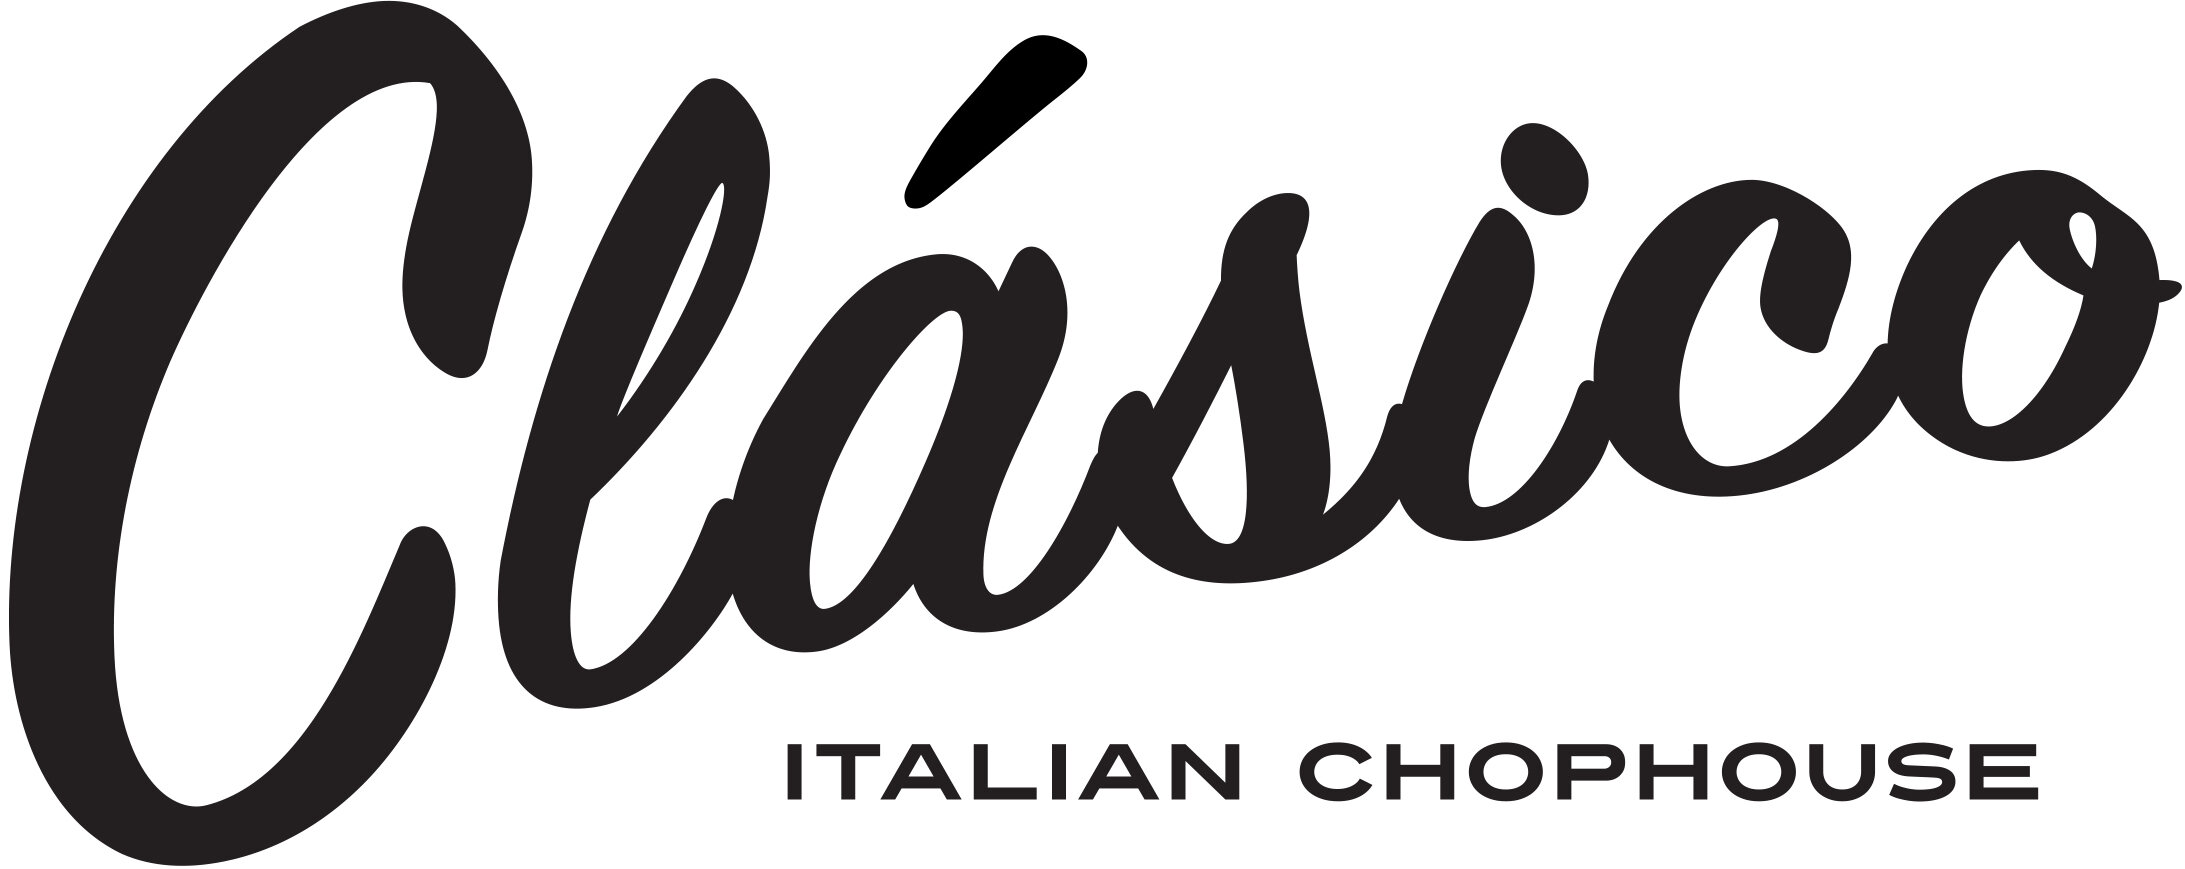 Clasico logo